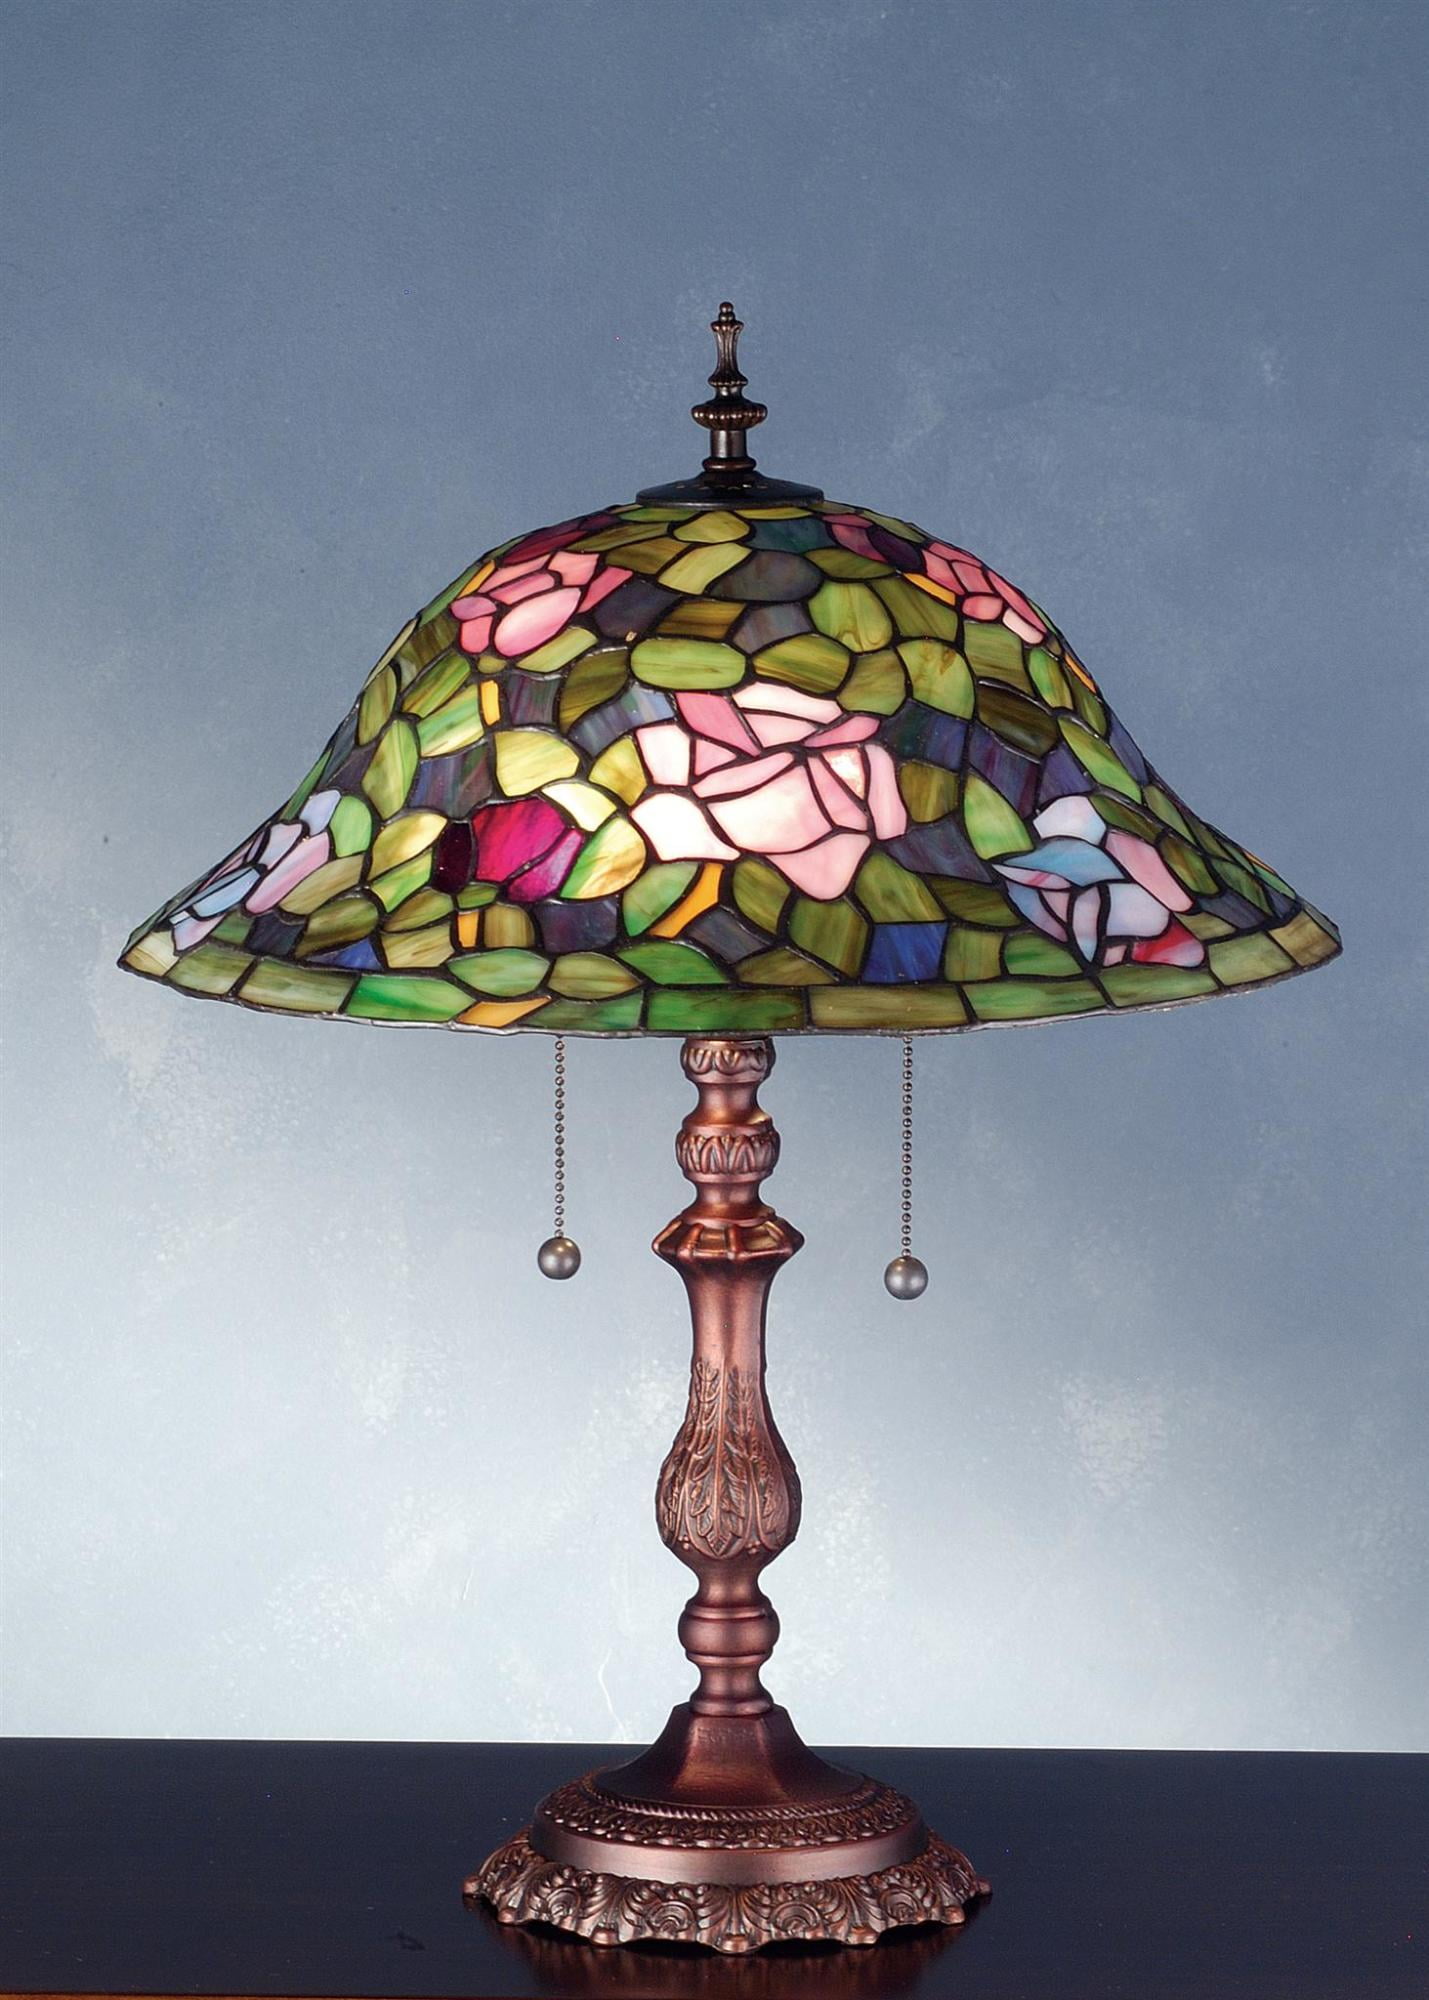 19"H Tiffany Rosebush Table Lamp